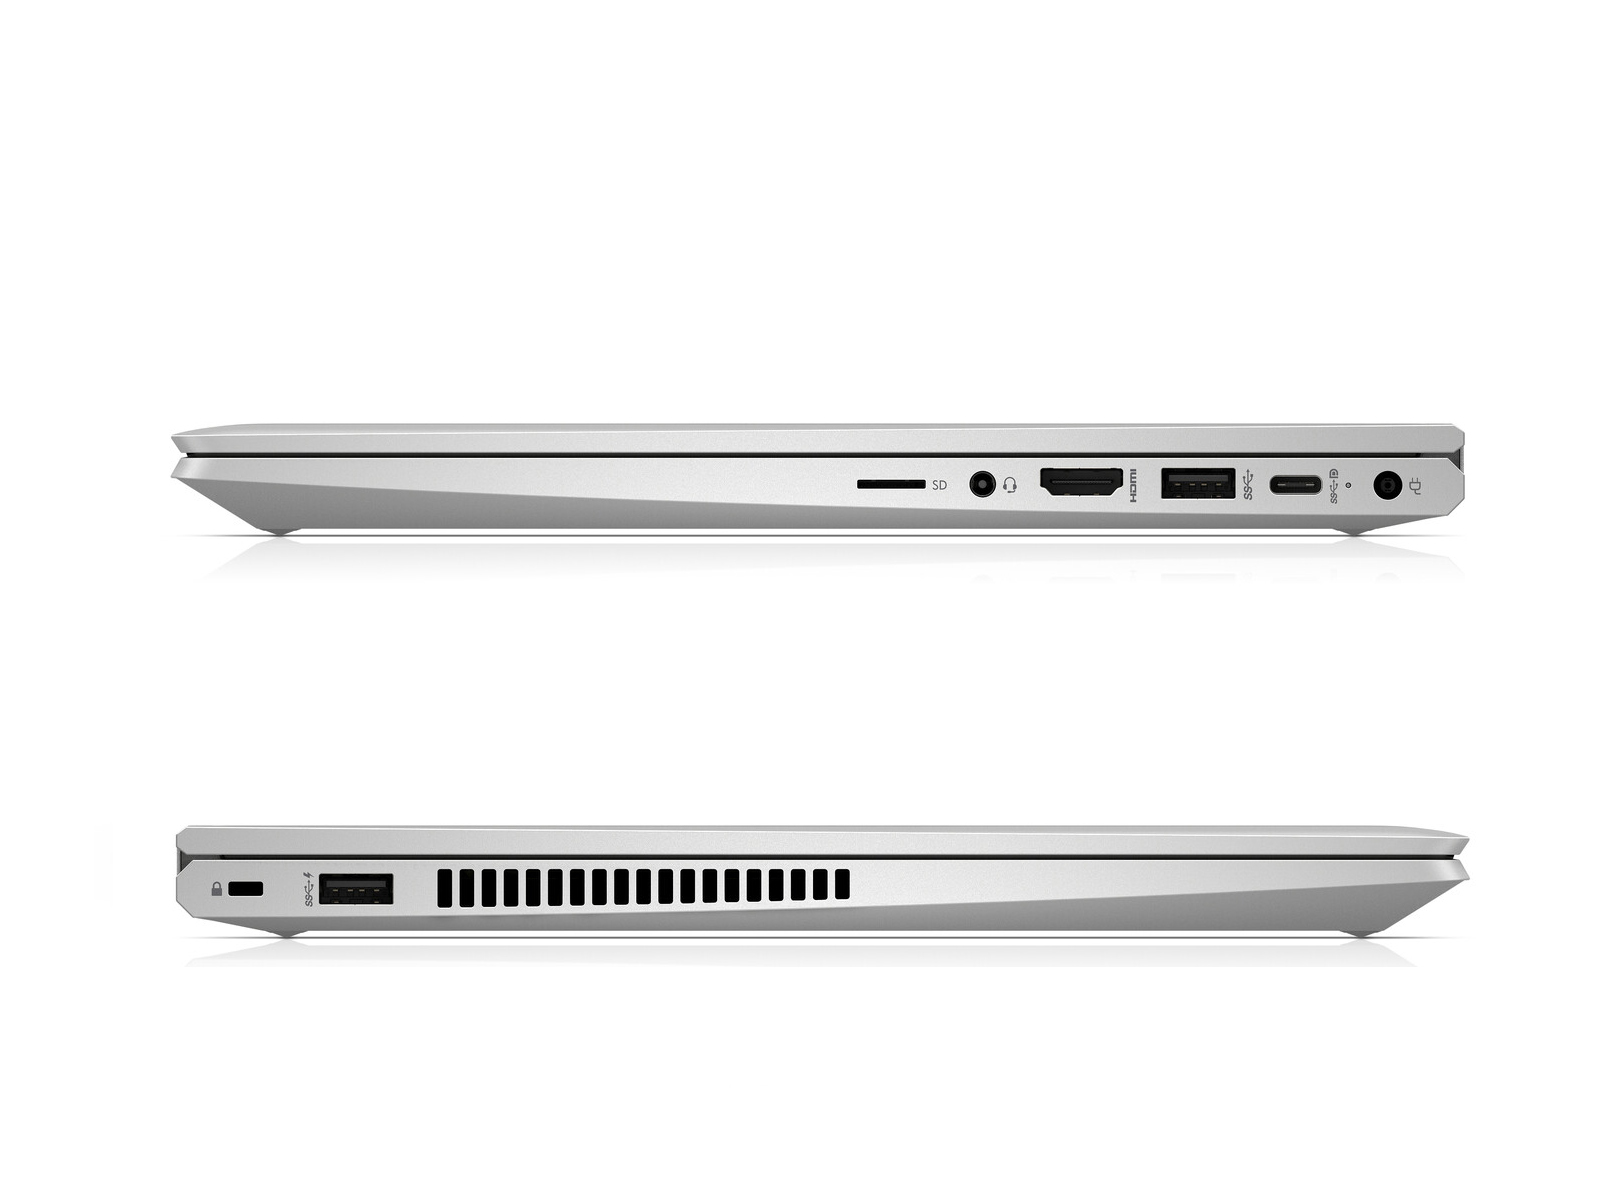 HP ProBook x360 435 G7, Ryzen 3 4300U